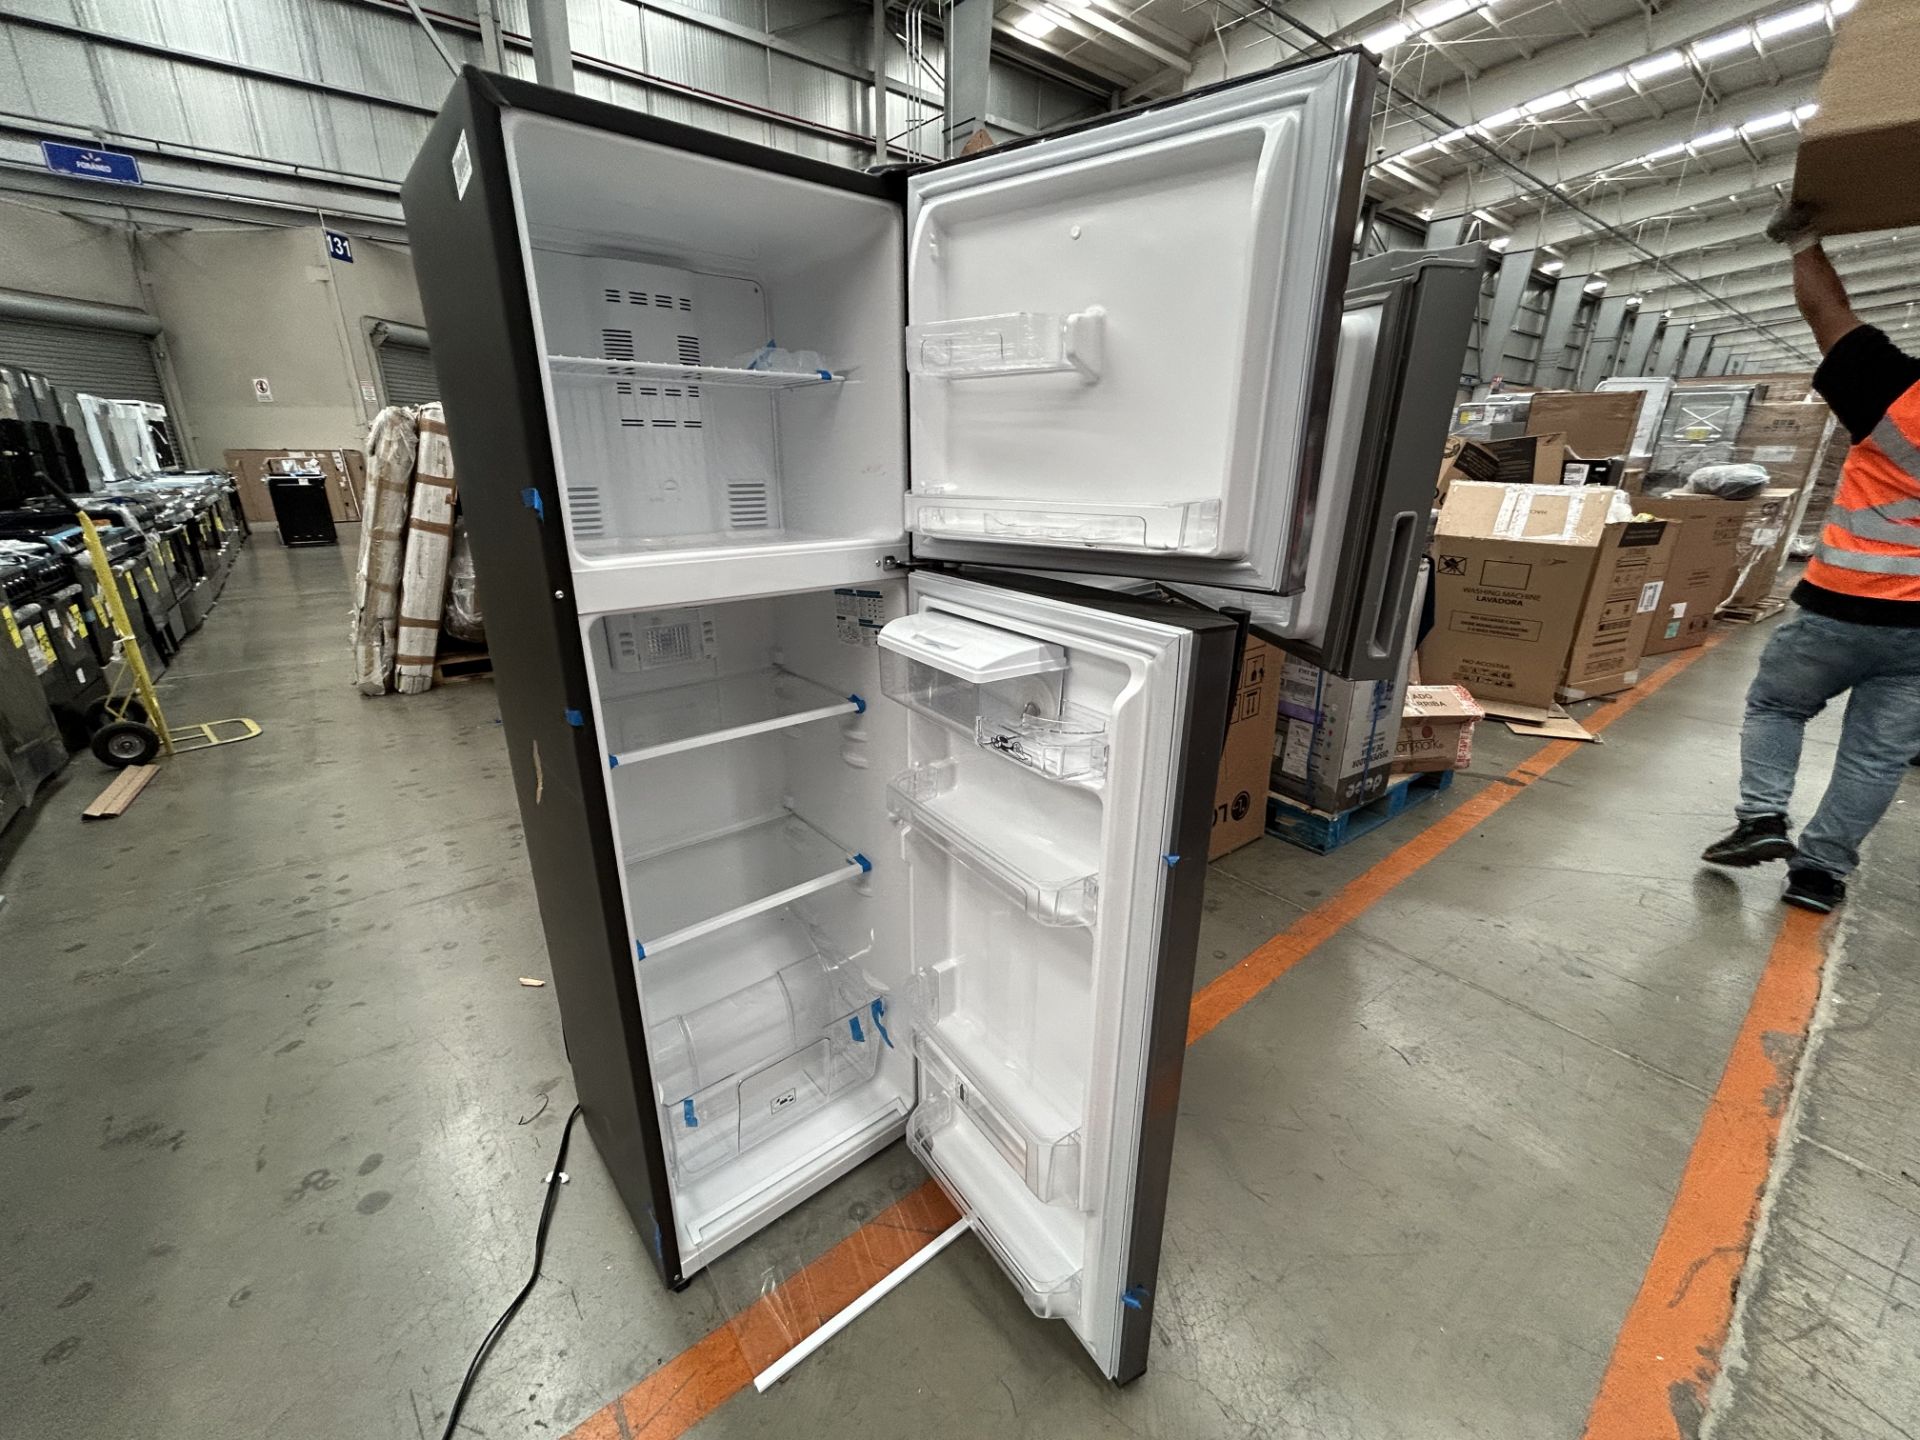 Lote de 2 refrigeradores contiene: 1 Refrigerador con dispensador de agua Marca MABE, Modelo RMA250 - Image 5 of 6